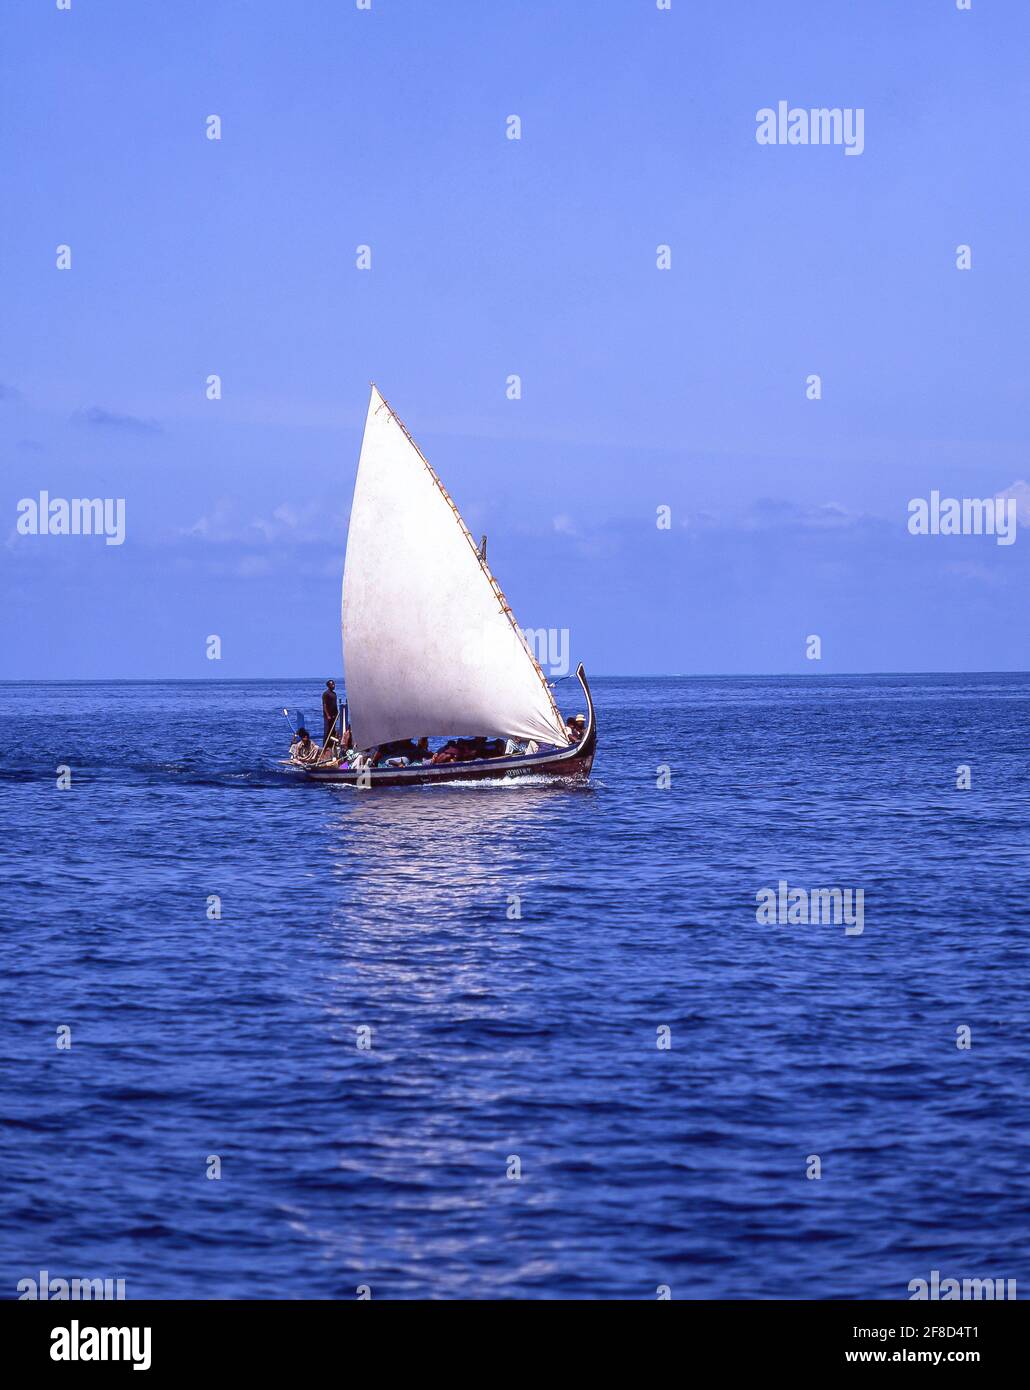 Wooden dhow boat with sail, Bandos, Kaafu Atoll, Republic of Maldives Stock Photo